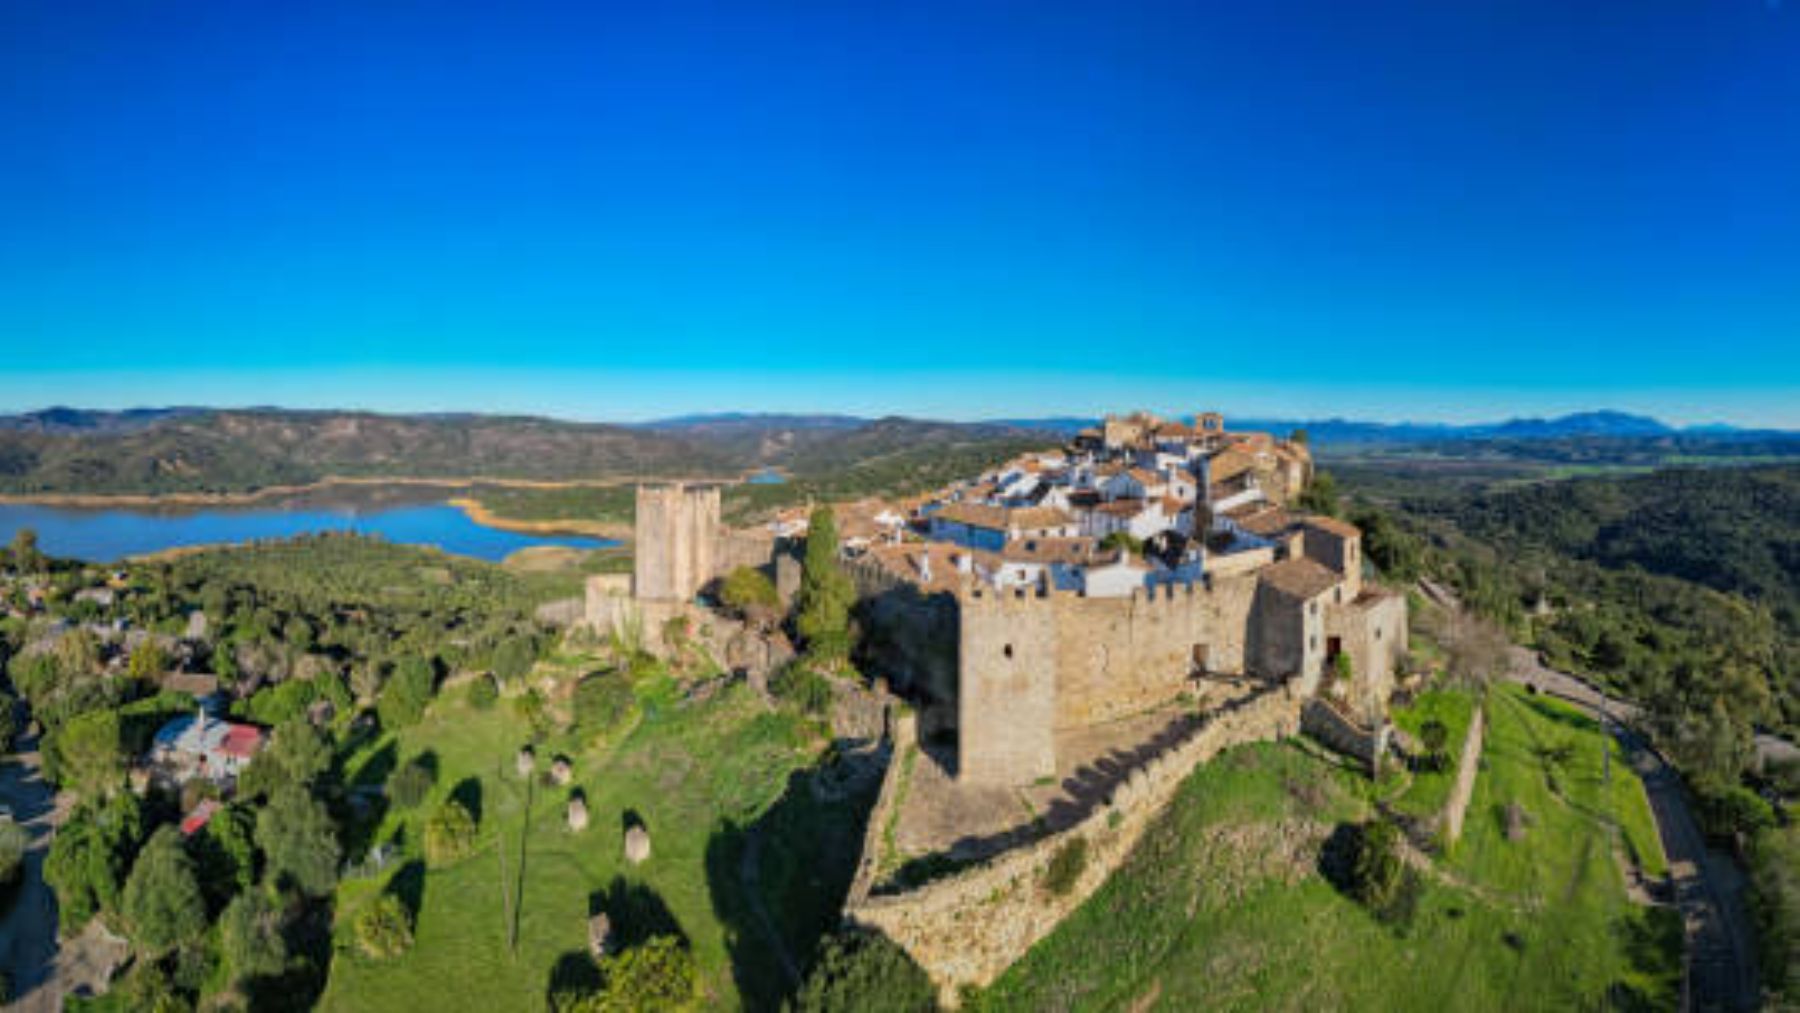 El impresionante y desconocido pueblo de España que está dentro de una fortaleza